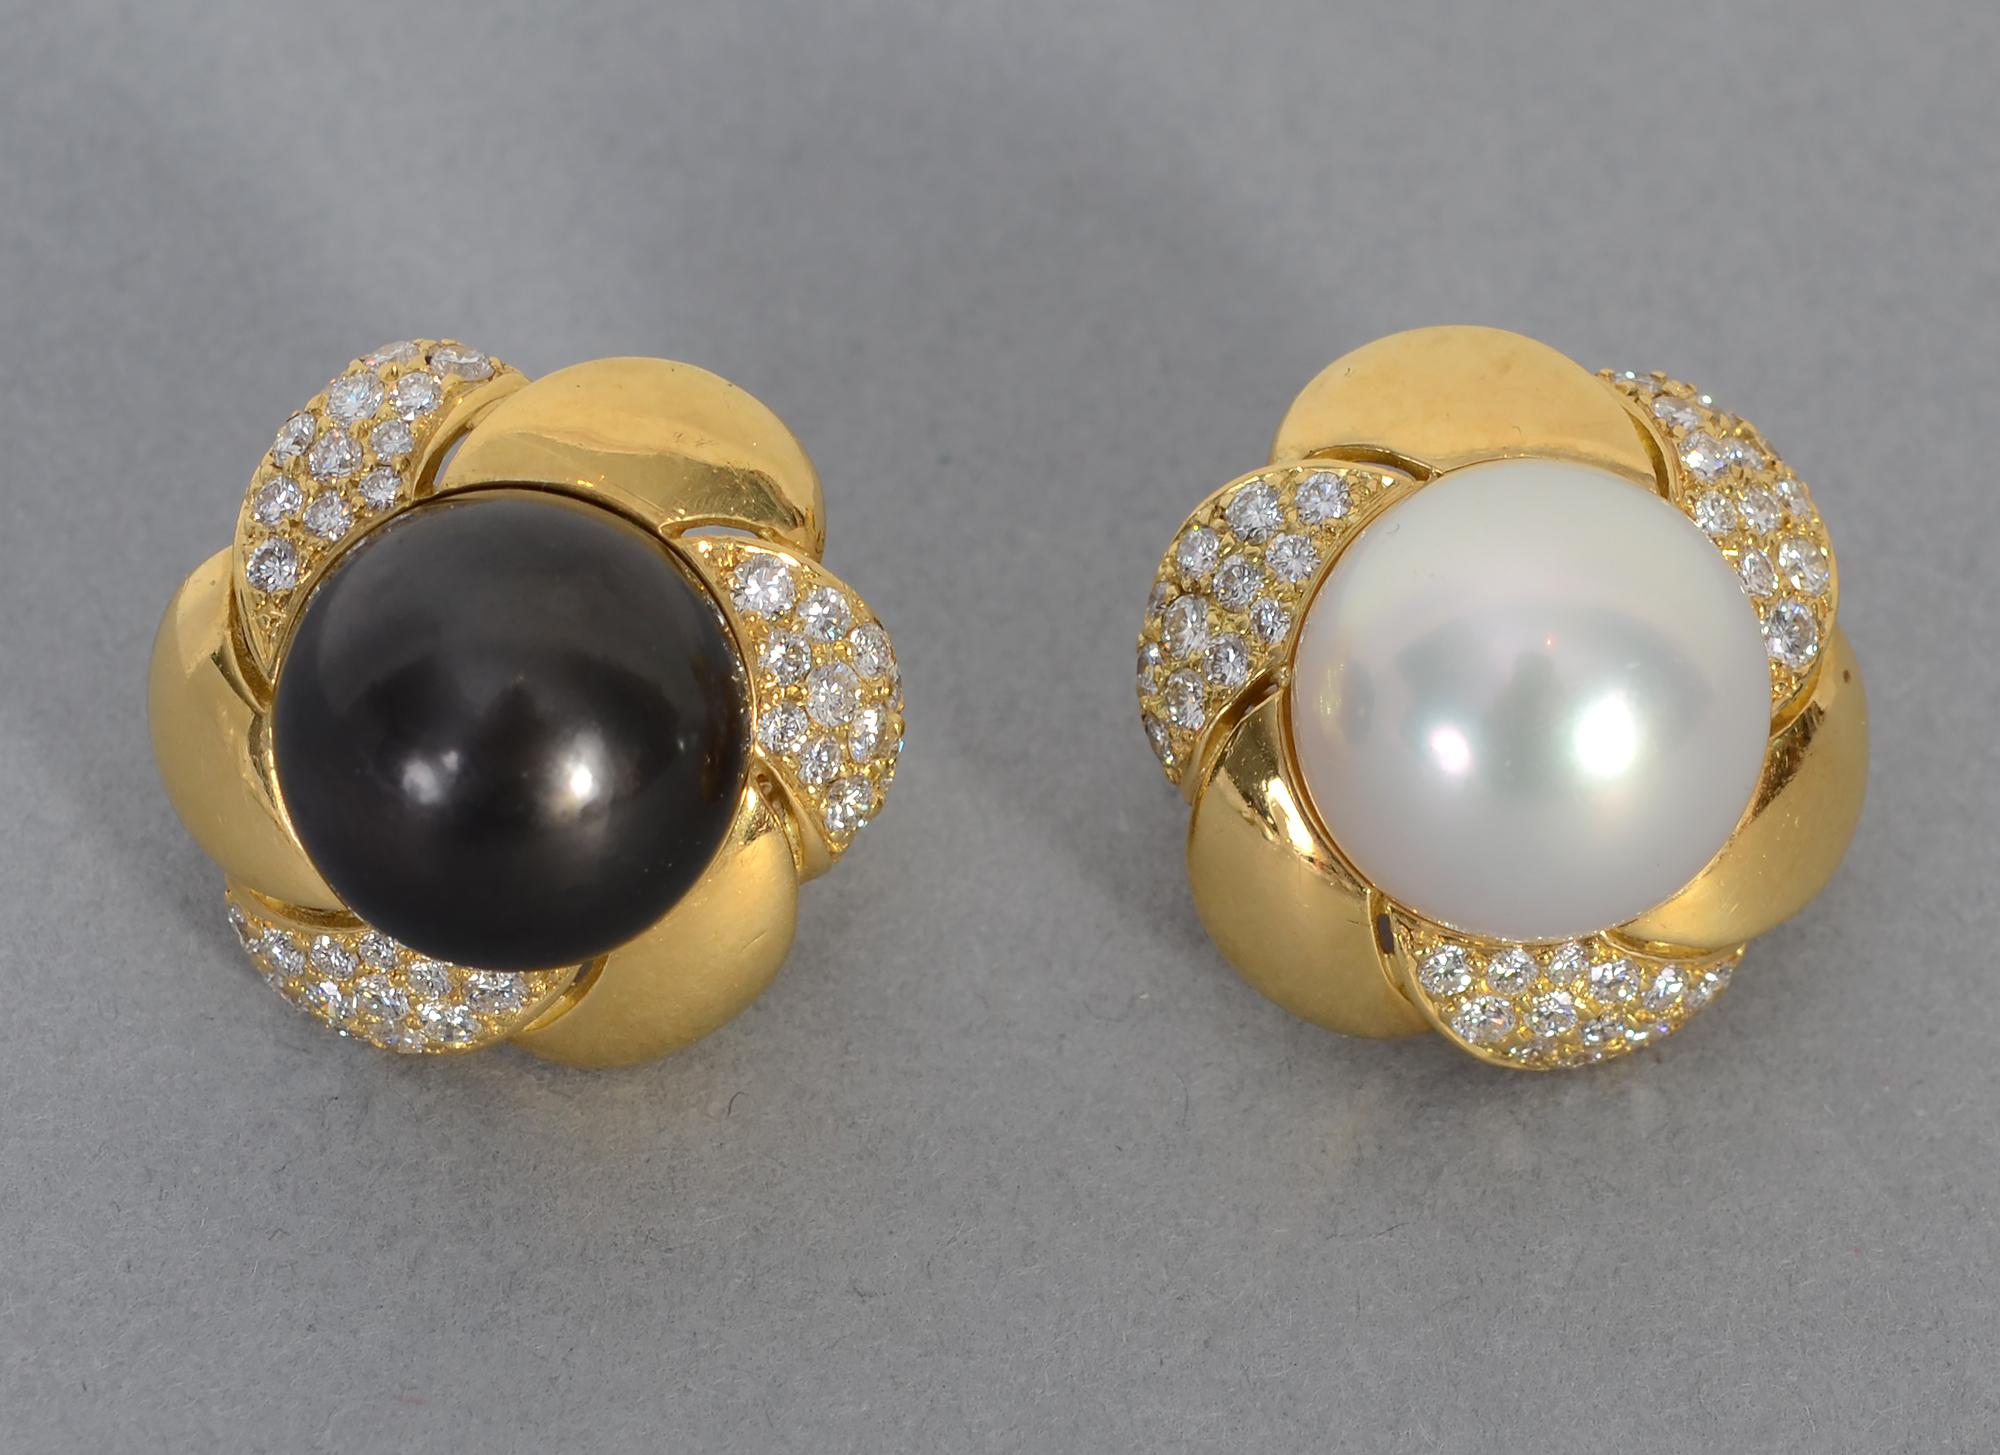 Auffallend große, schwarz-weiße Perlenohrringe, umgeben von Diamanten. Die Perlen sind jeweils 15 mm groß. Es gibt 72 runde Brillanten mit einem Gesamtgewicht von etwa 3 Karat. Gelappte Goldplättchen wechseln sich mit solchen aus Diamanten ab. Die